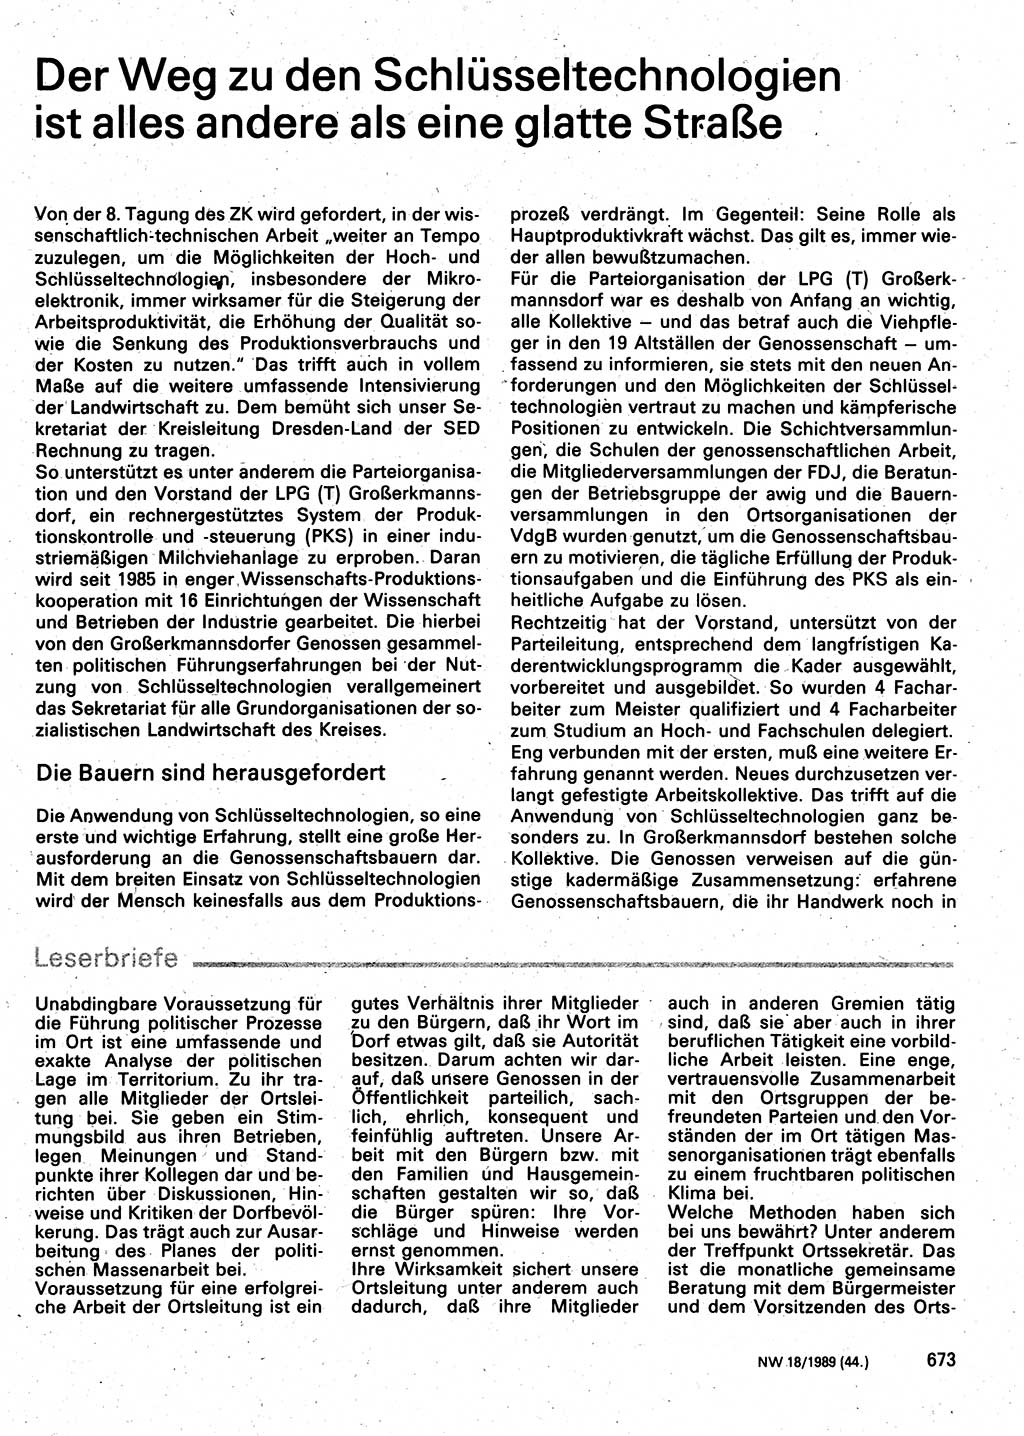 Neuer Weg (NW), Organ des Zentralkomitees (ZK) der SED (Sozialistische Einheitspartei Deutschlands) für Fragen des Parteilebens, 44. Jahrgang [Deutsche Demokratische Republik (DDR)] 1989, Seite 673 (NW ZK SED DDR 1989, S. 673)